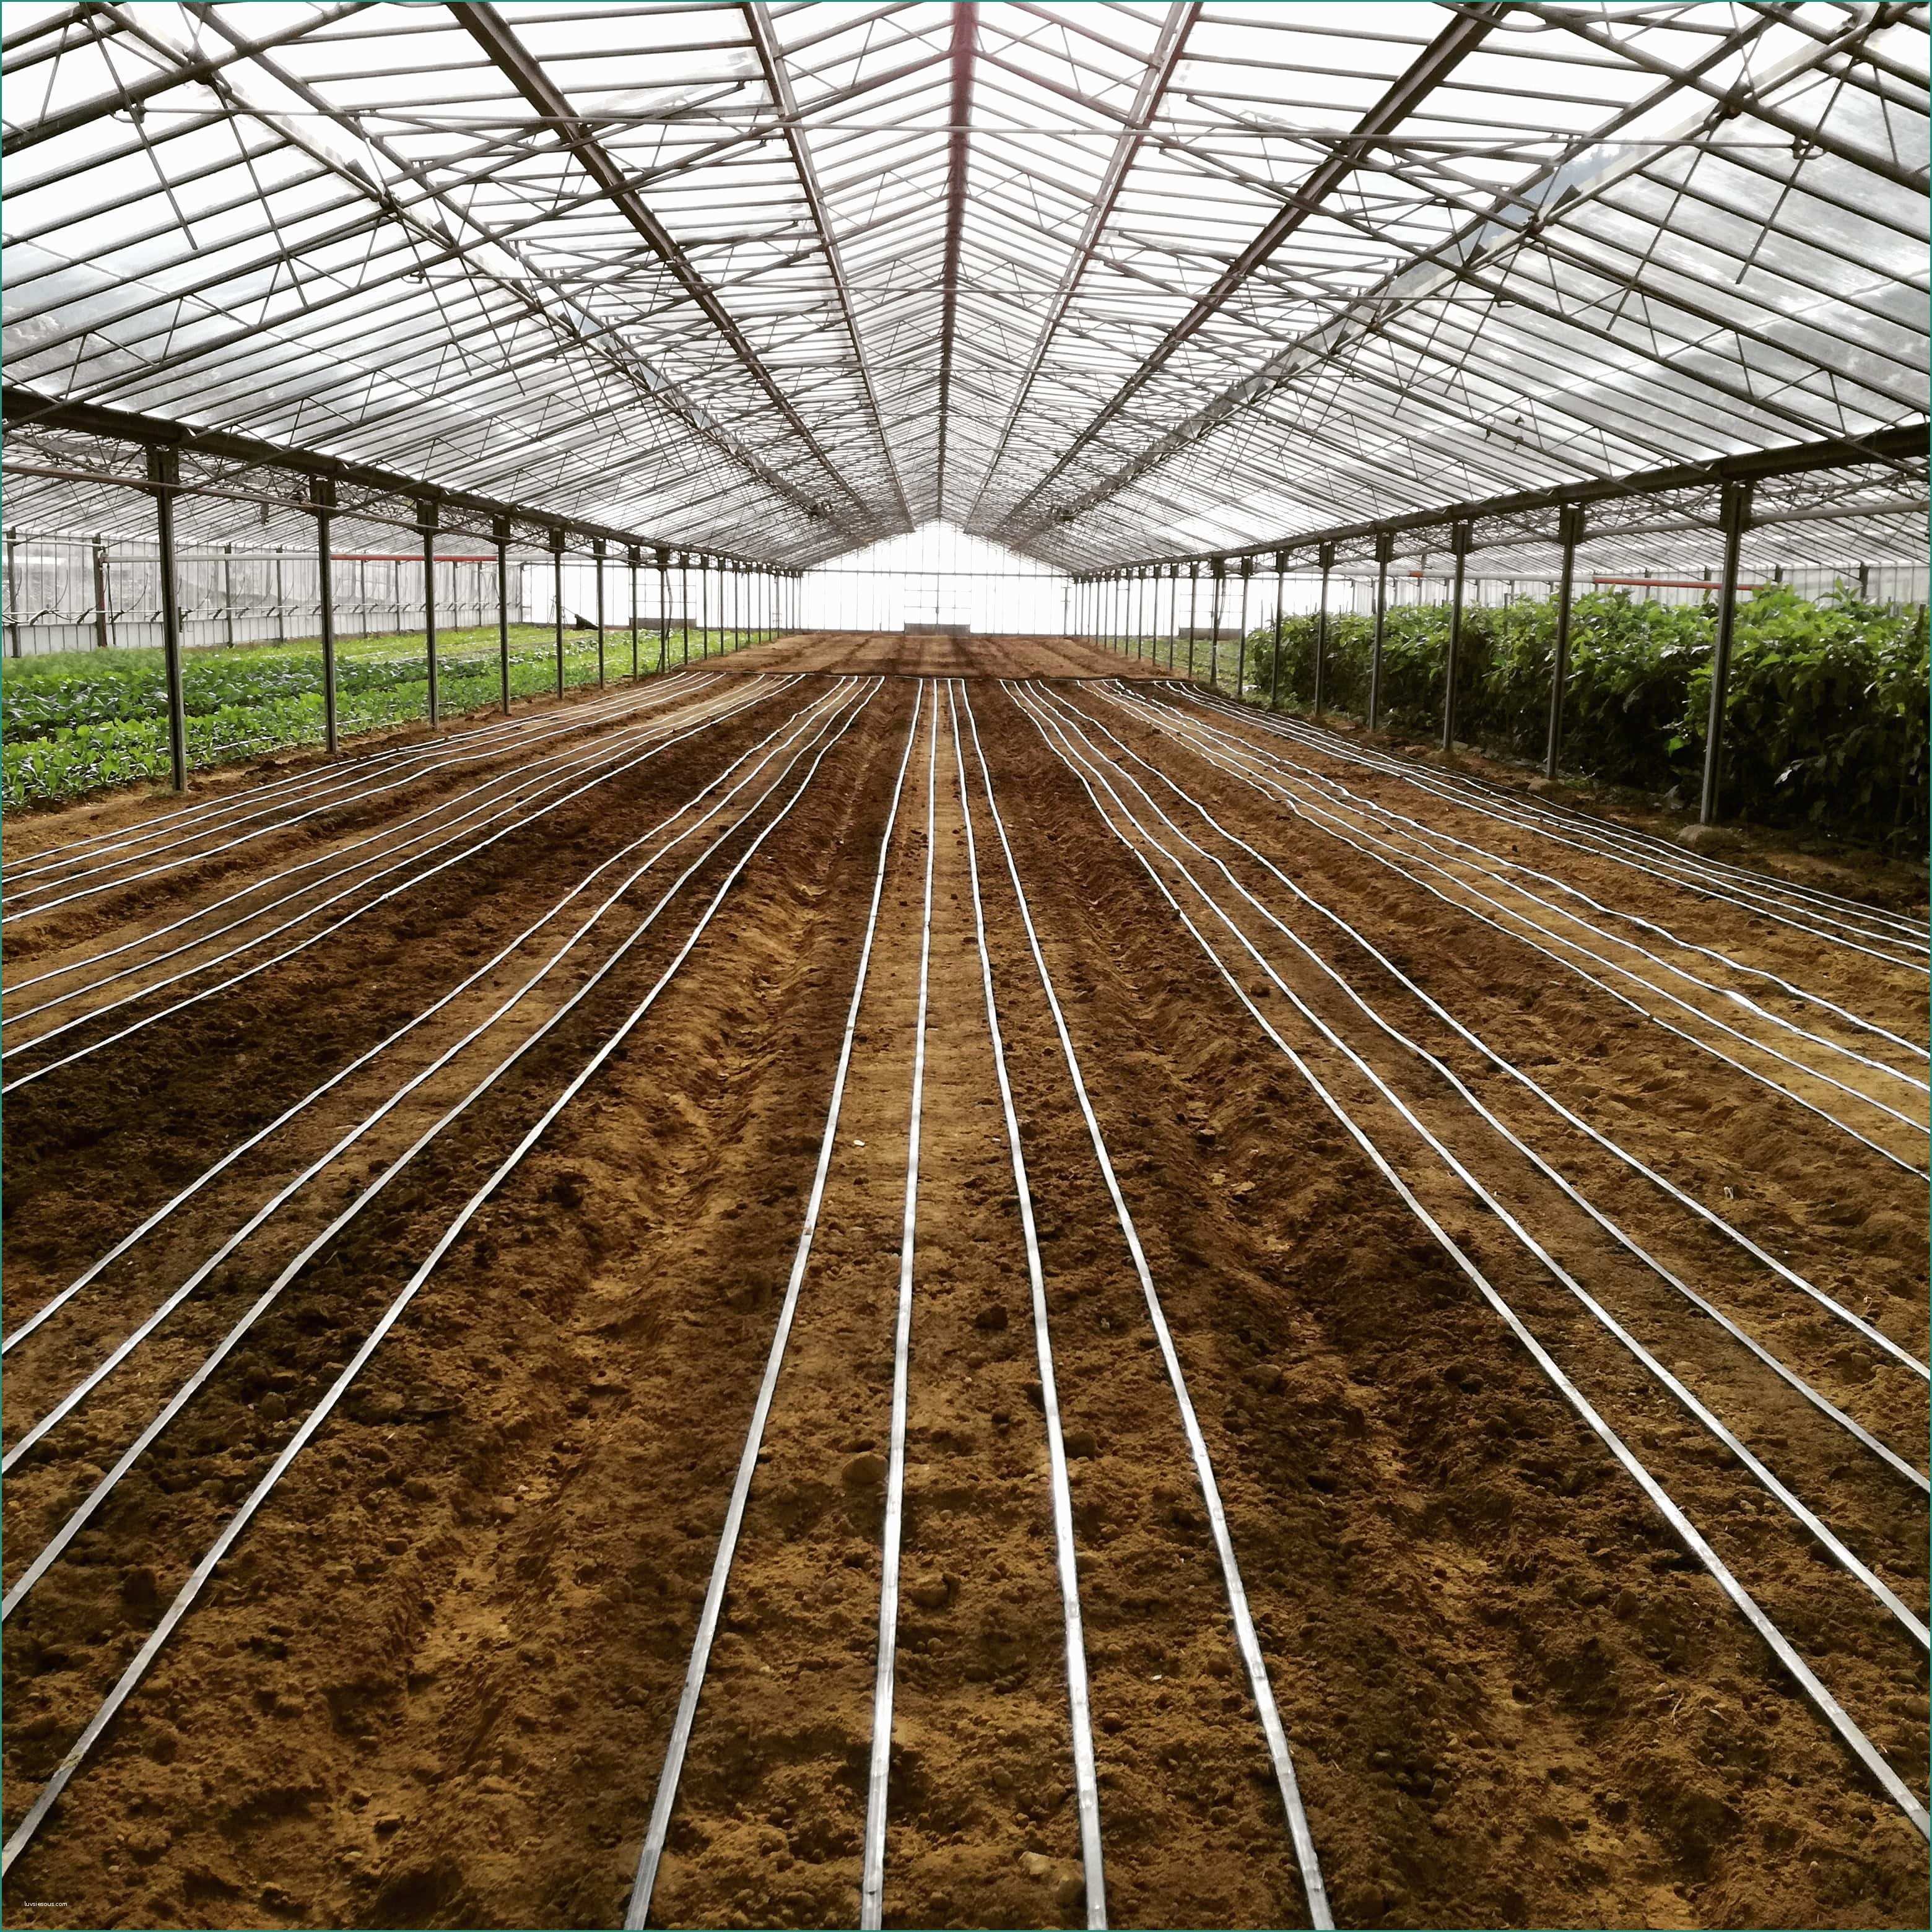 Leroy Merlin Irrigazione E Impianto Di Irrigazione A Goccia Per orto Kit Per Irrigazione orto